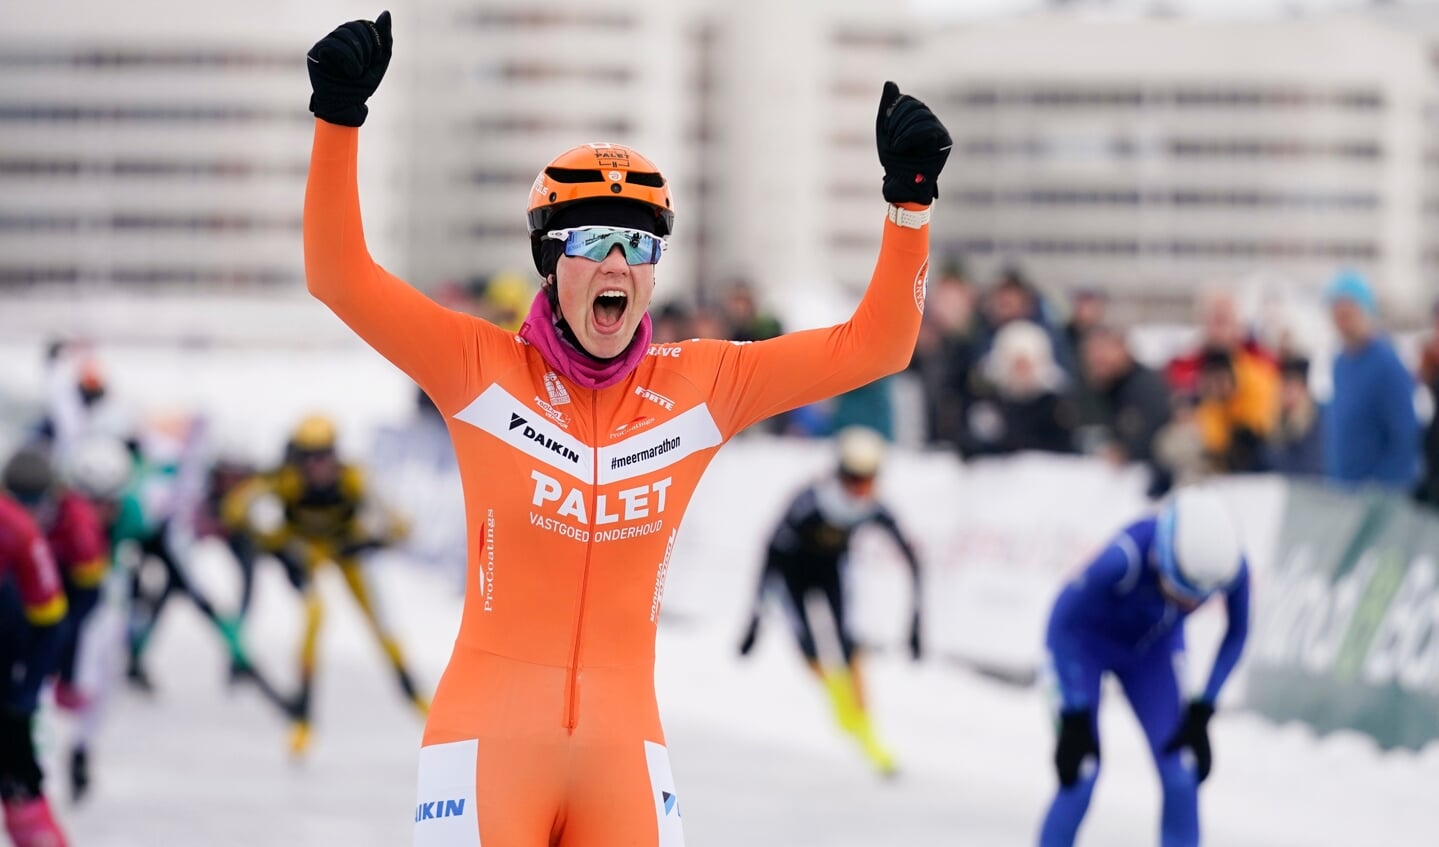 ZWEDEN - LULEA
Finale Grand Prix Marathonschaatsen
Dames 150 km en de heren 200 km.

Foto; Ineke Dedden wint de 150 km finale.